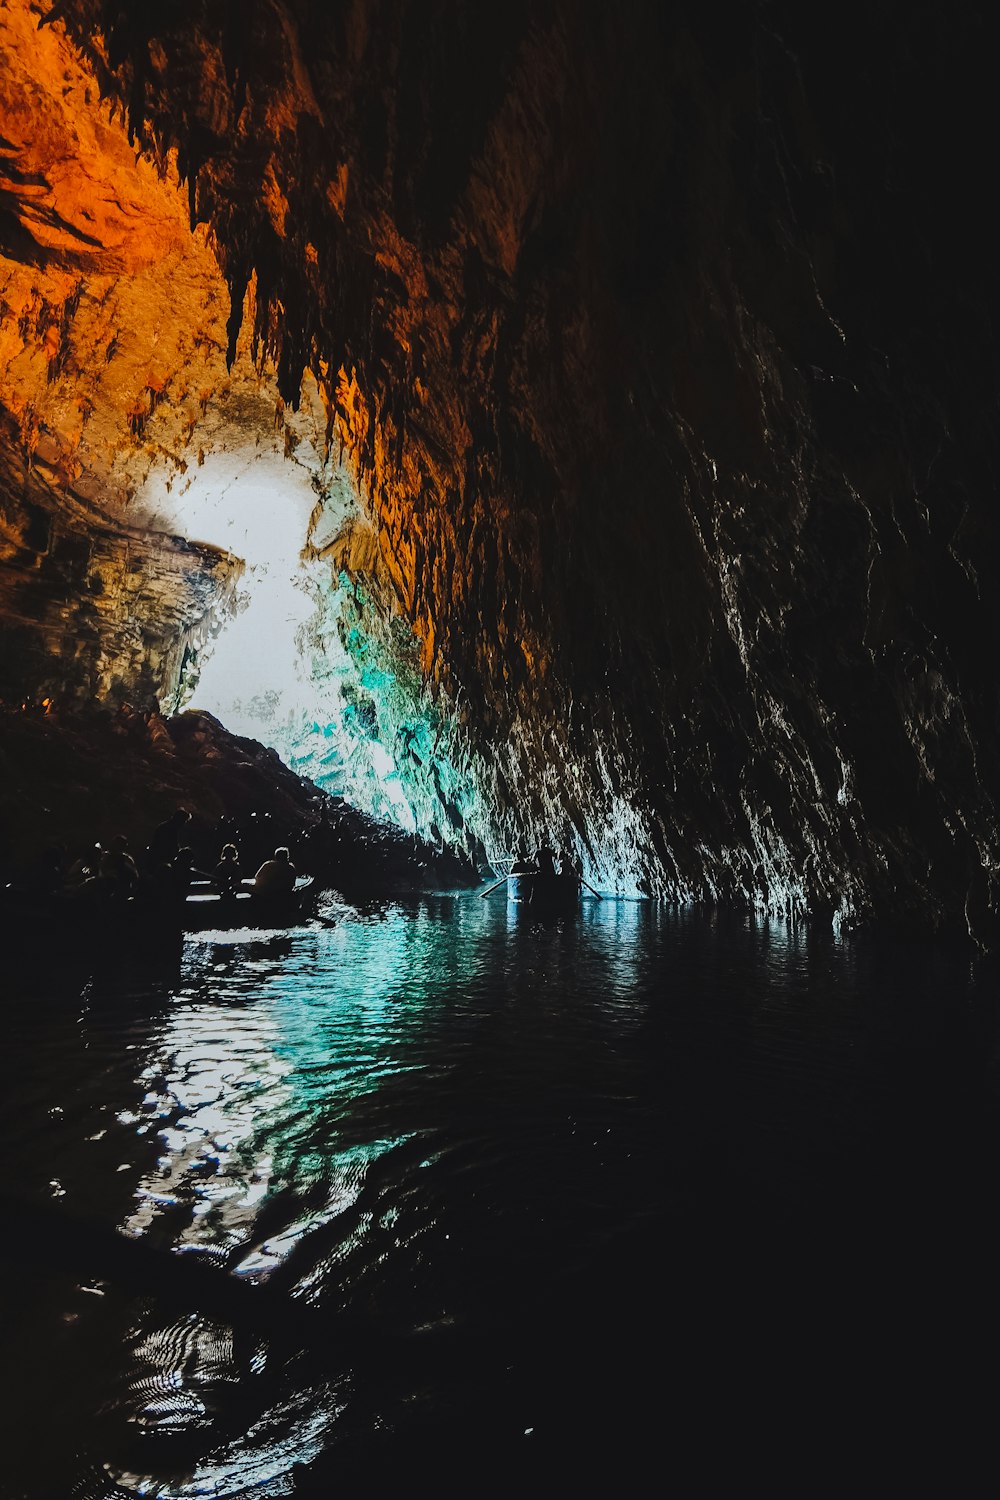 洞窟の地底湖の写真 Unsplashの無料ぐるまき写真